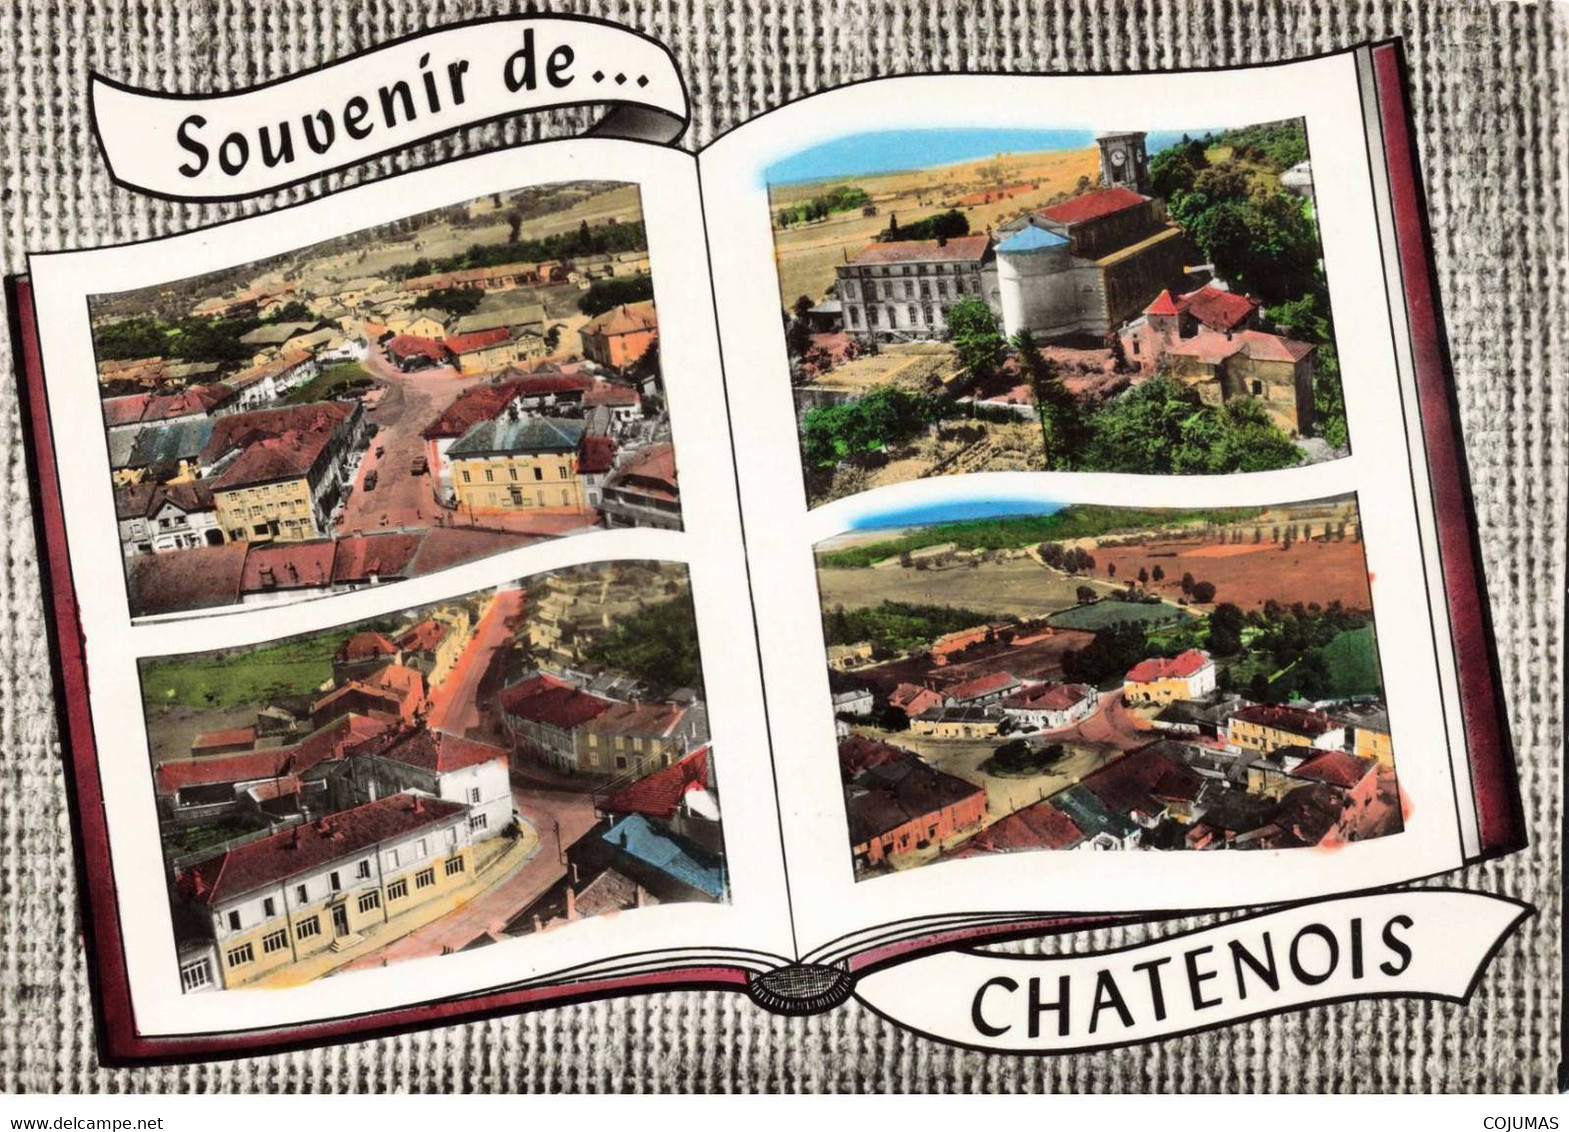 88 - CHATENOIS - S03273 - Souvenir De Chatenois - Divers Aspects De La Ville - CPSM 15x10 Cm - L1 - Chatenois